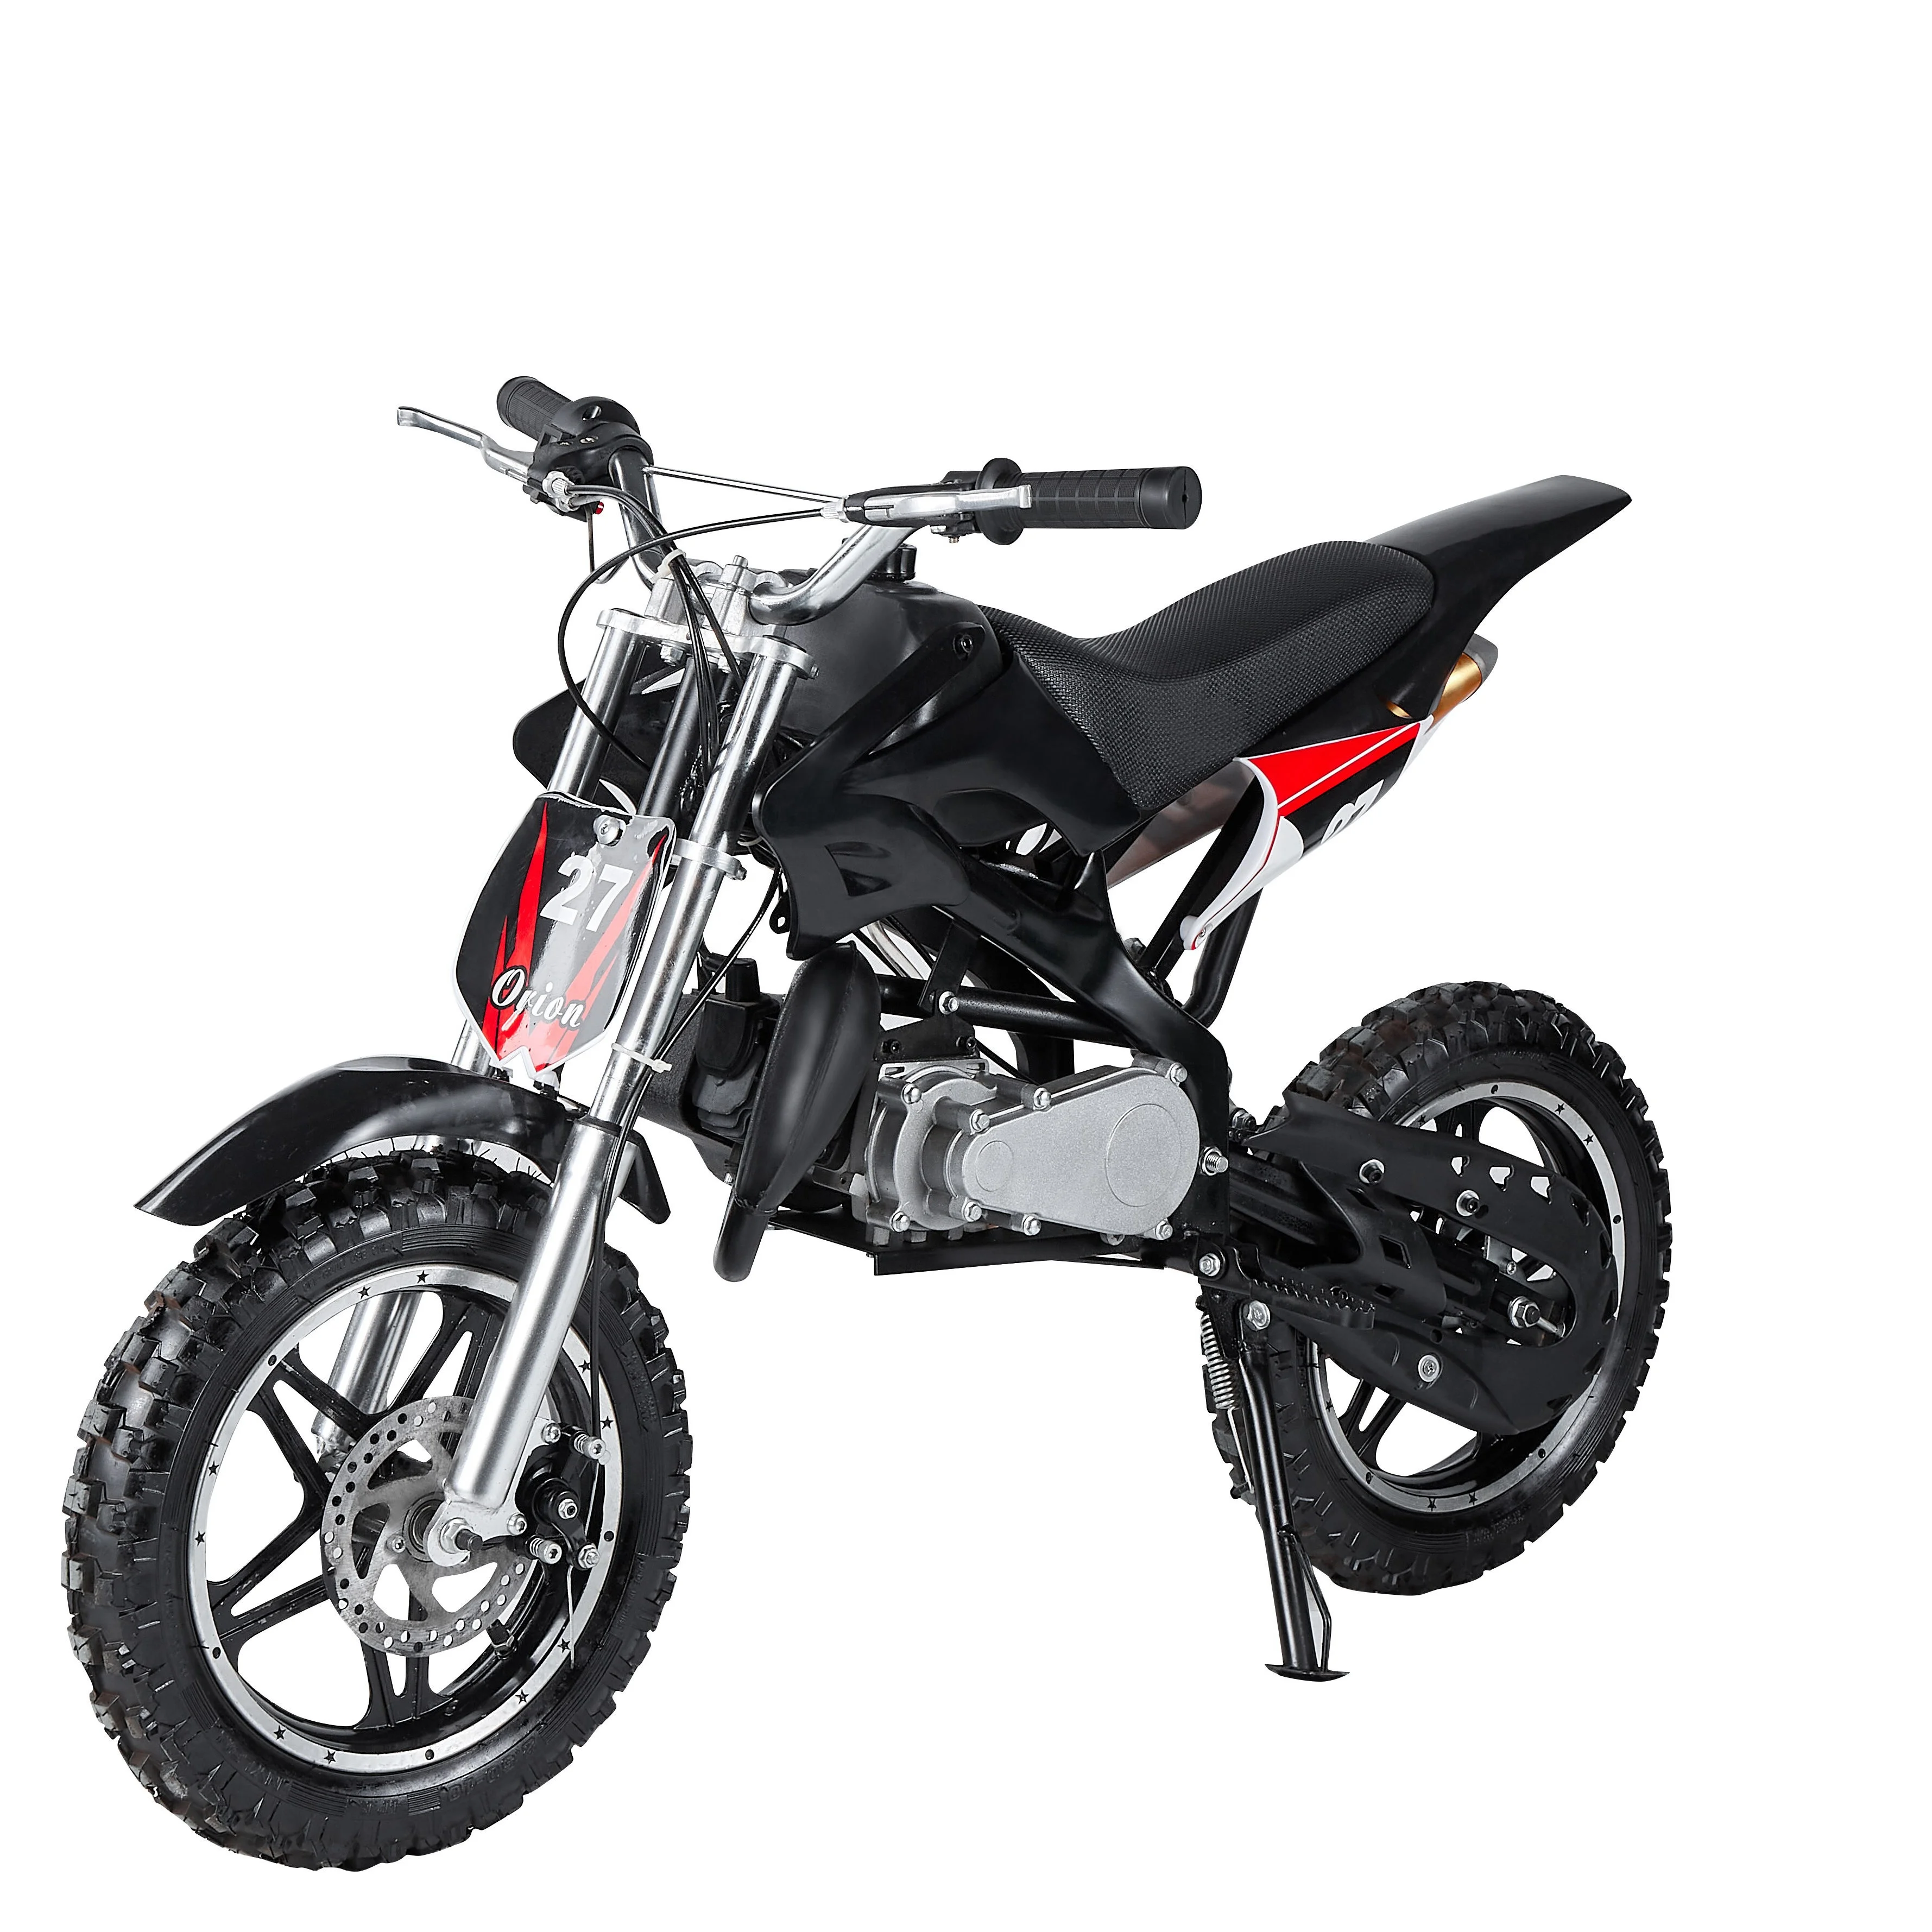 

49cc Mini Dirt Bike for kids 2-Stroke pull starter motorcycle 50cc dirt bikes